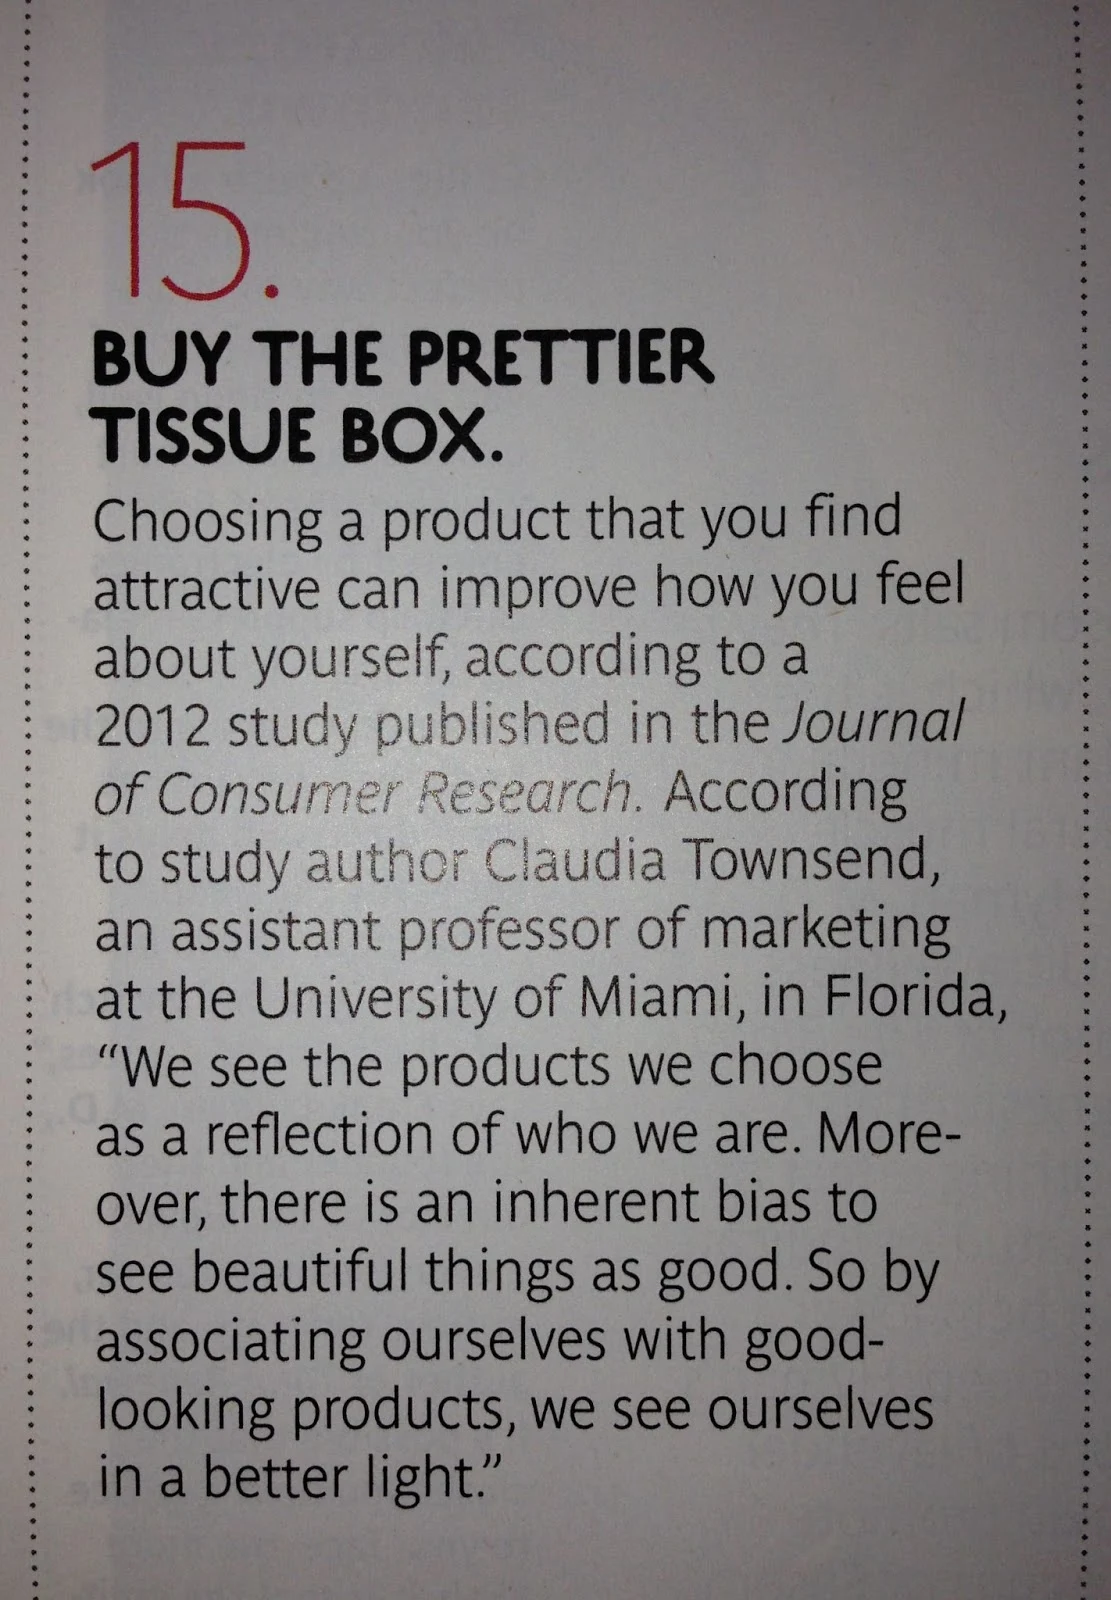 Buy The Prettier Tissue Box article clipping